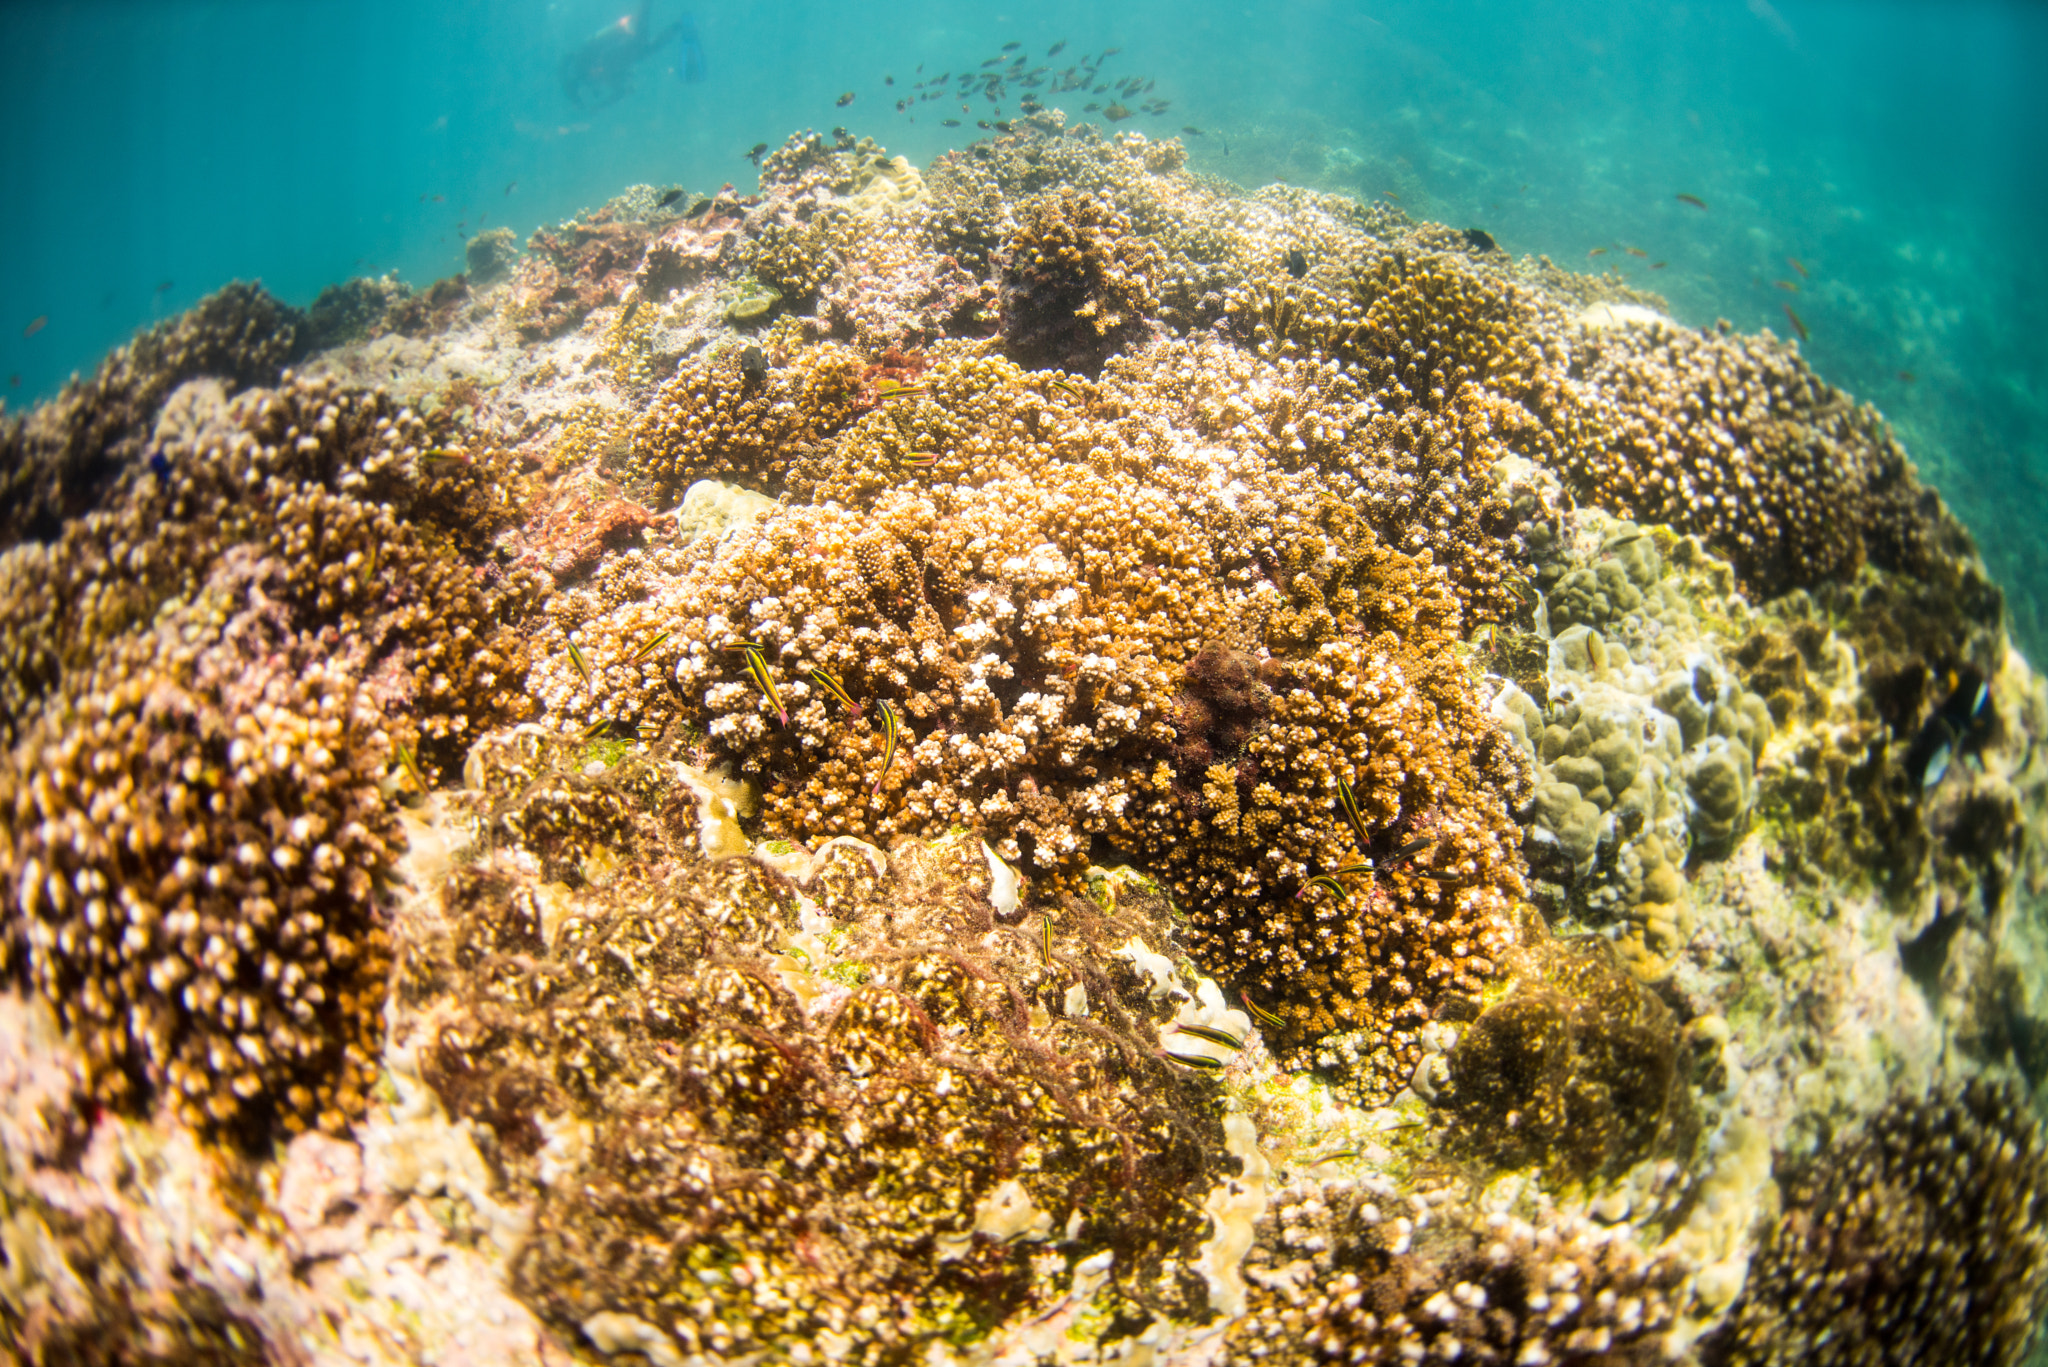 Nikon AF Fisheye-Nikkor 16mm F2.8D sample photo. Reef life photography